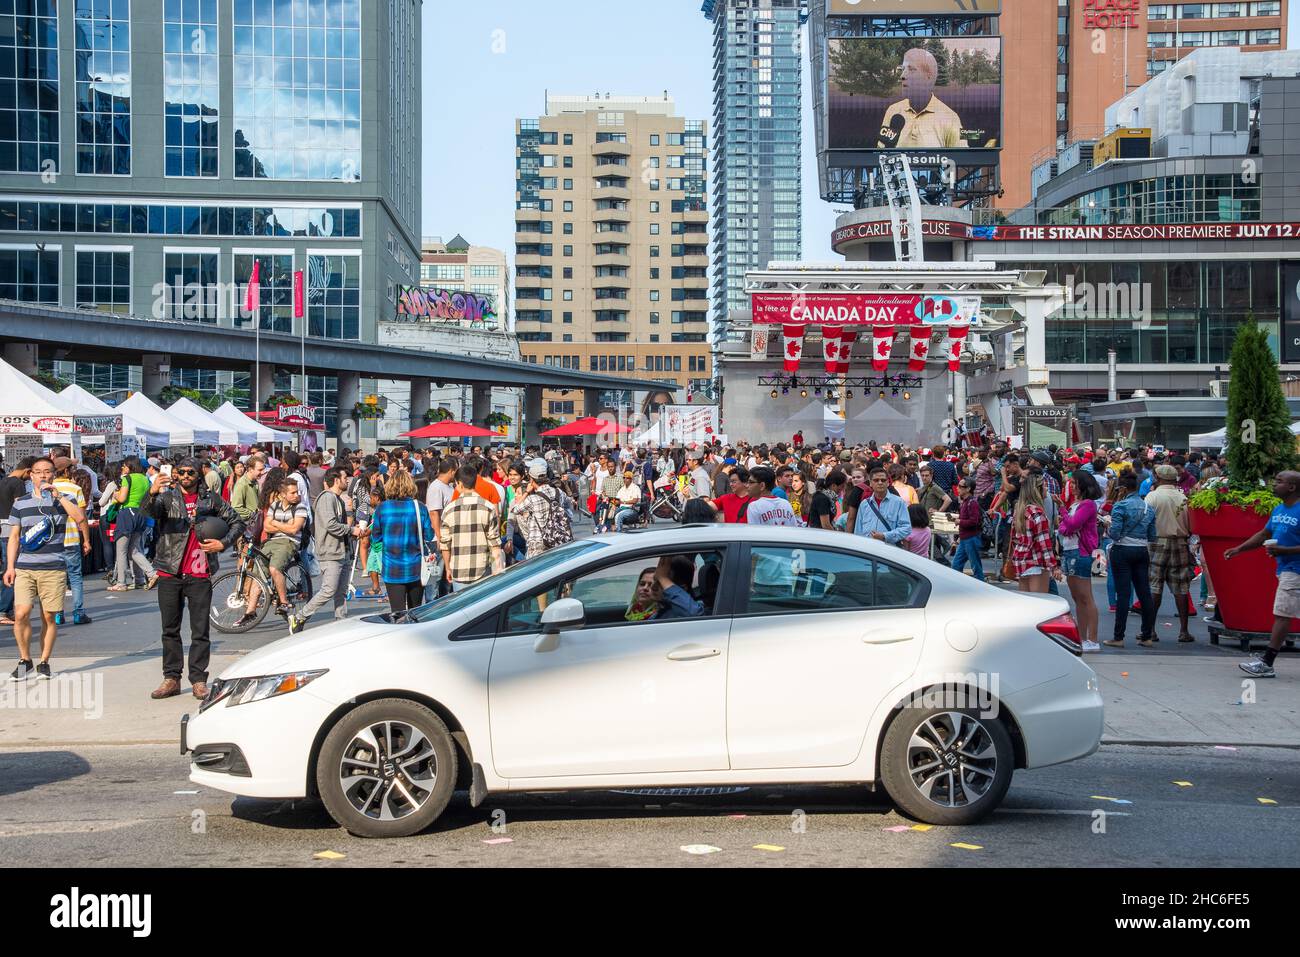 La gente en Dundas Square las calles durante el Día de Canadá. El Día de Canadá se celebra anualmente y es una fiesta nacional. Foto de stock